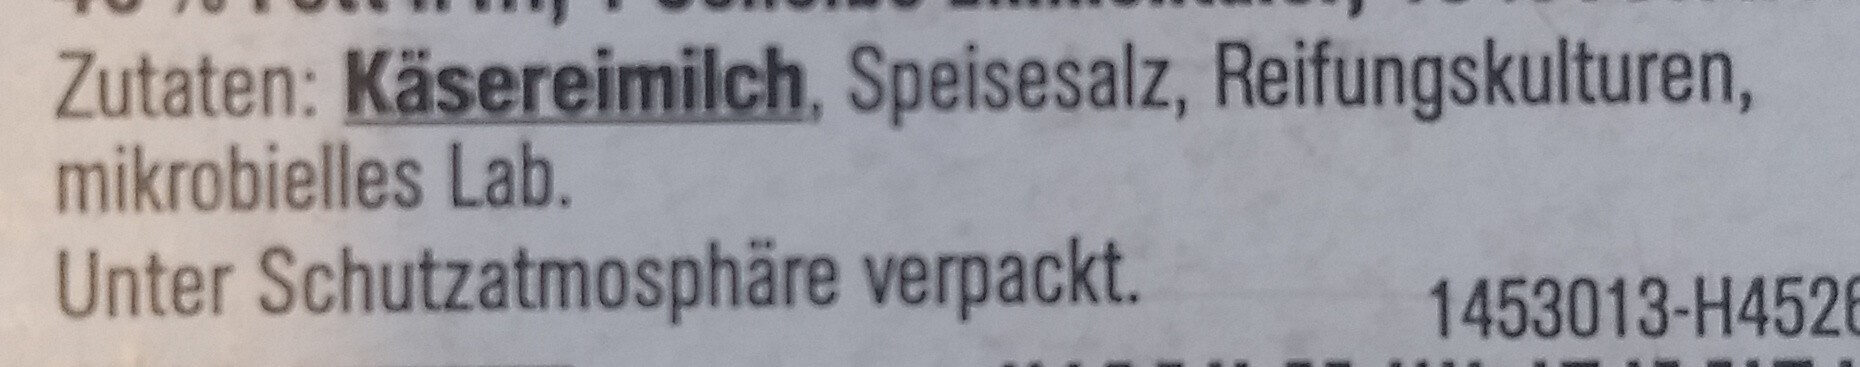 Käseaufschnitt - Ingredients - de